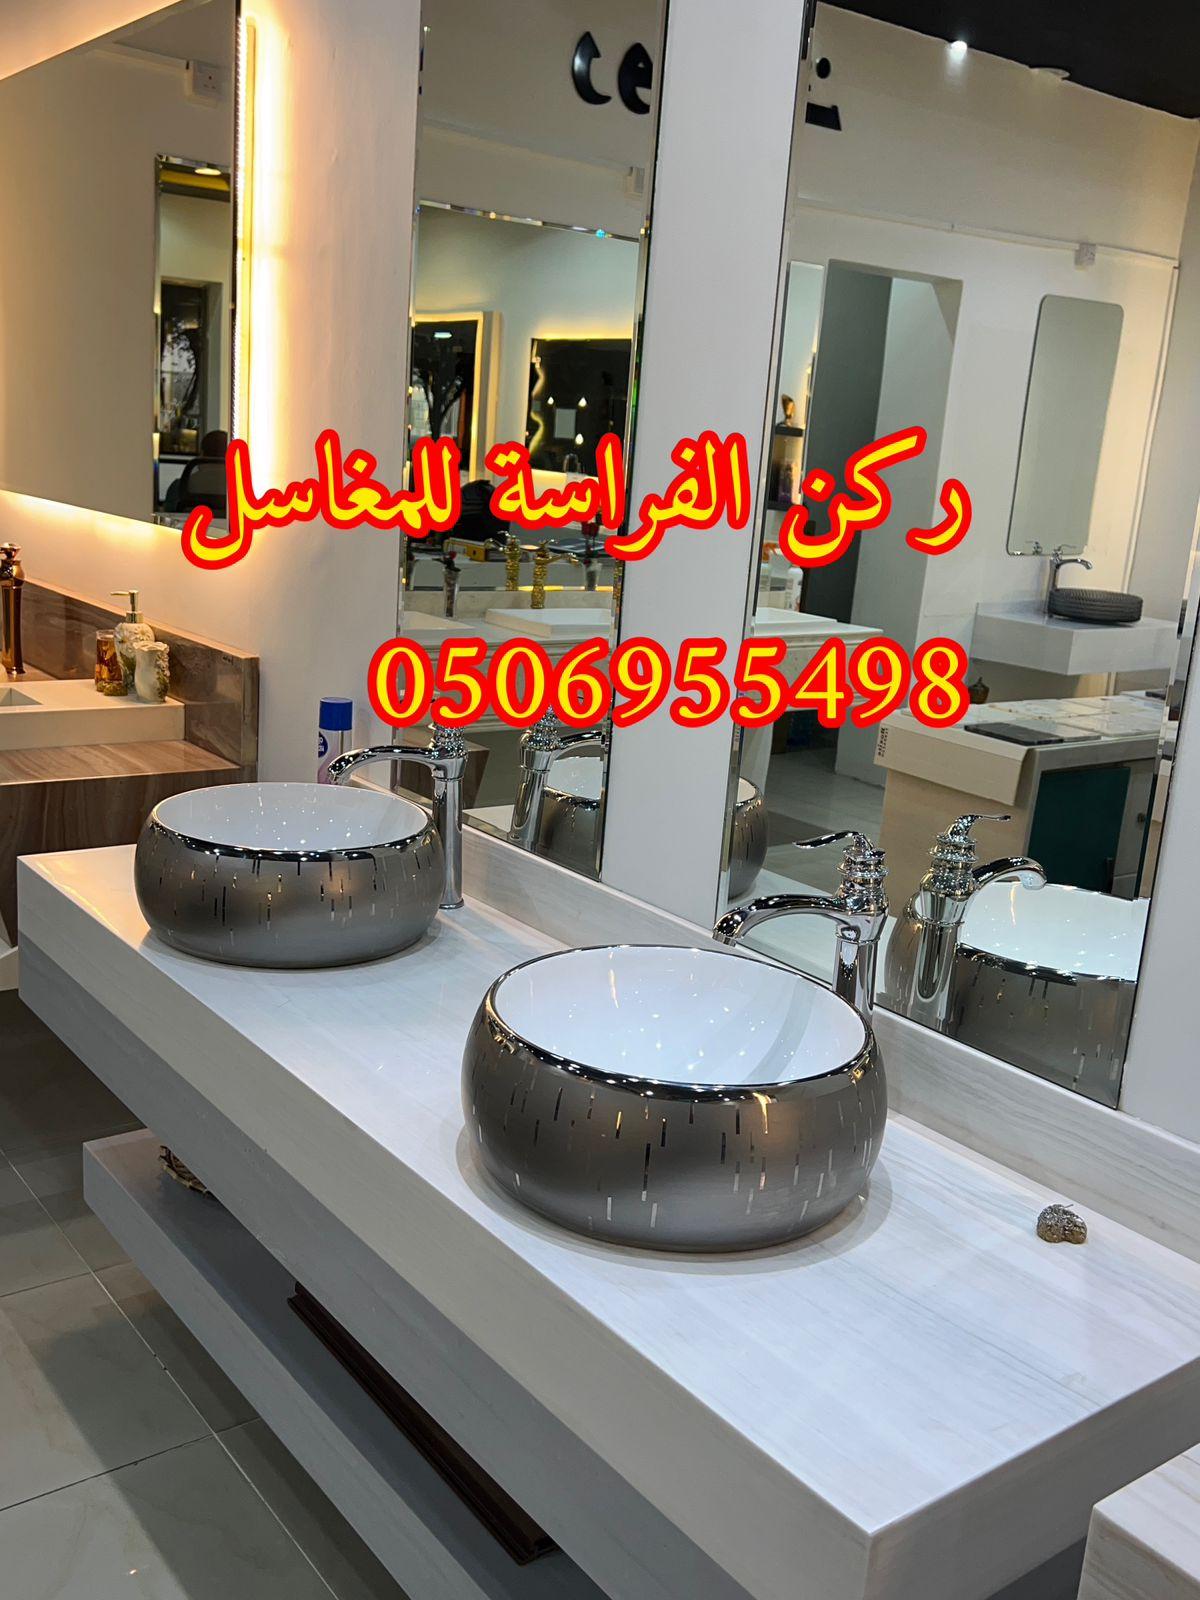 تصاميم مغاسل رخام للمجالس في الرياض,0506955498 757084533